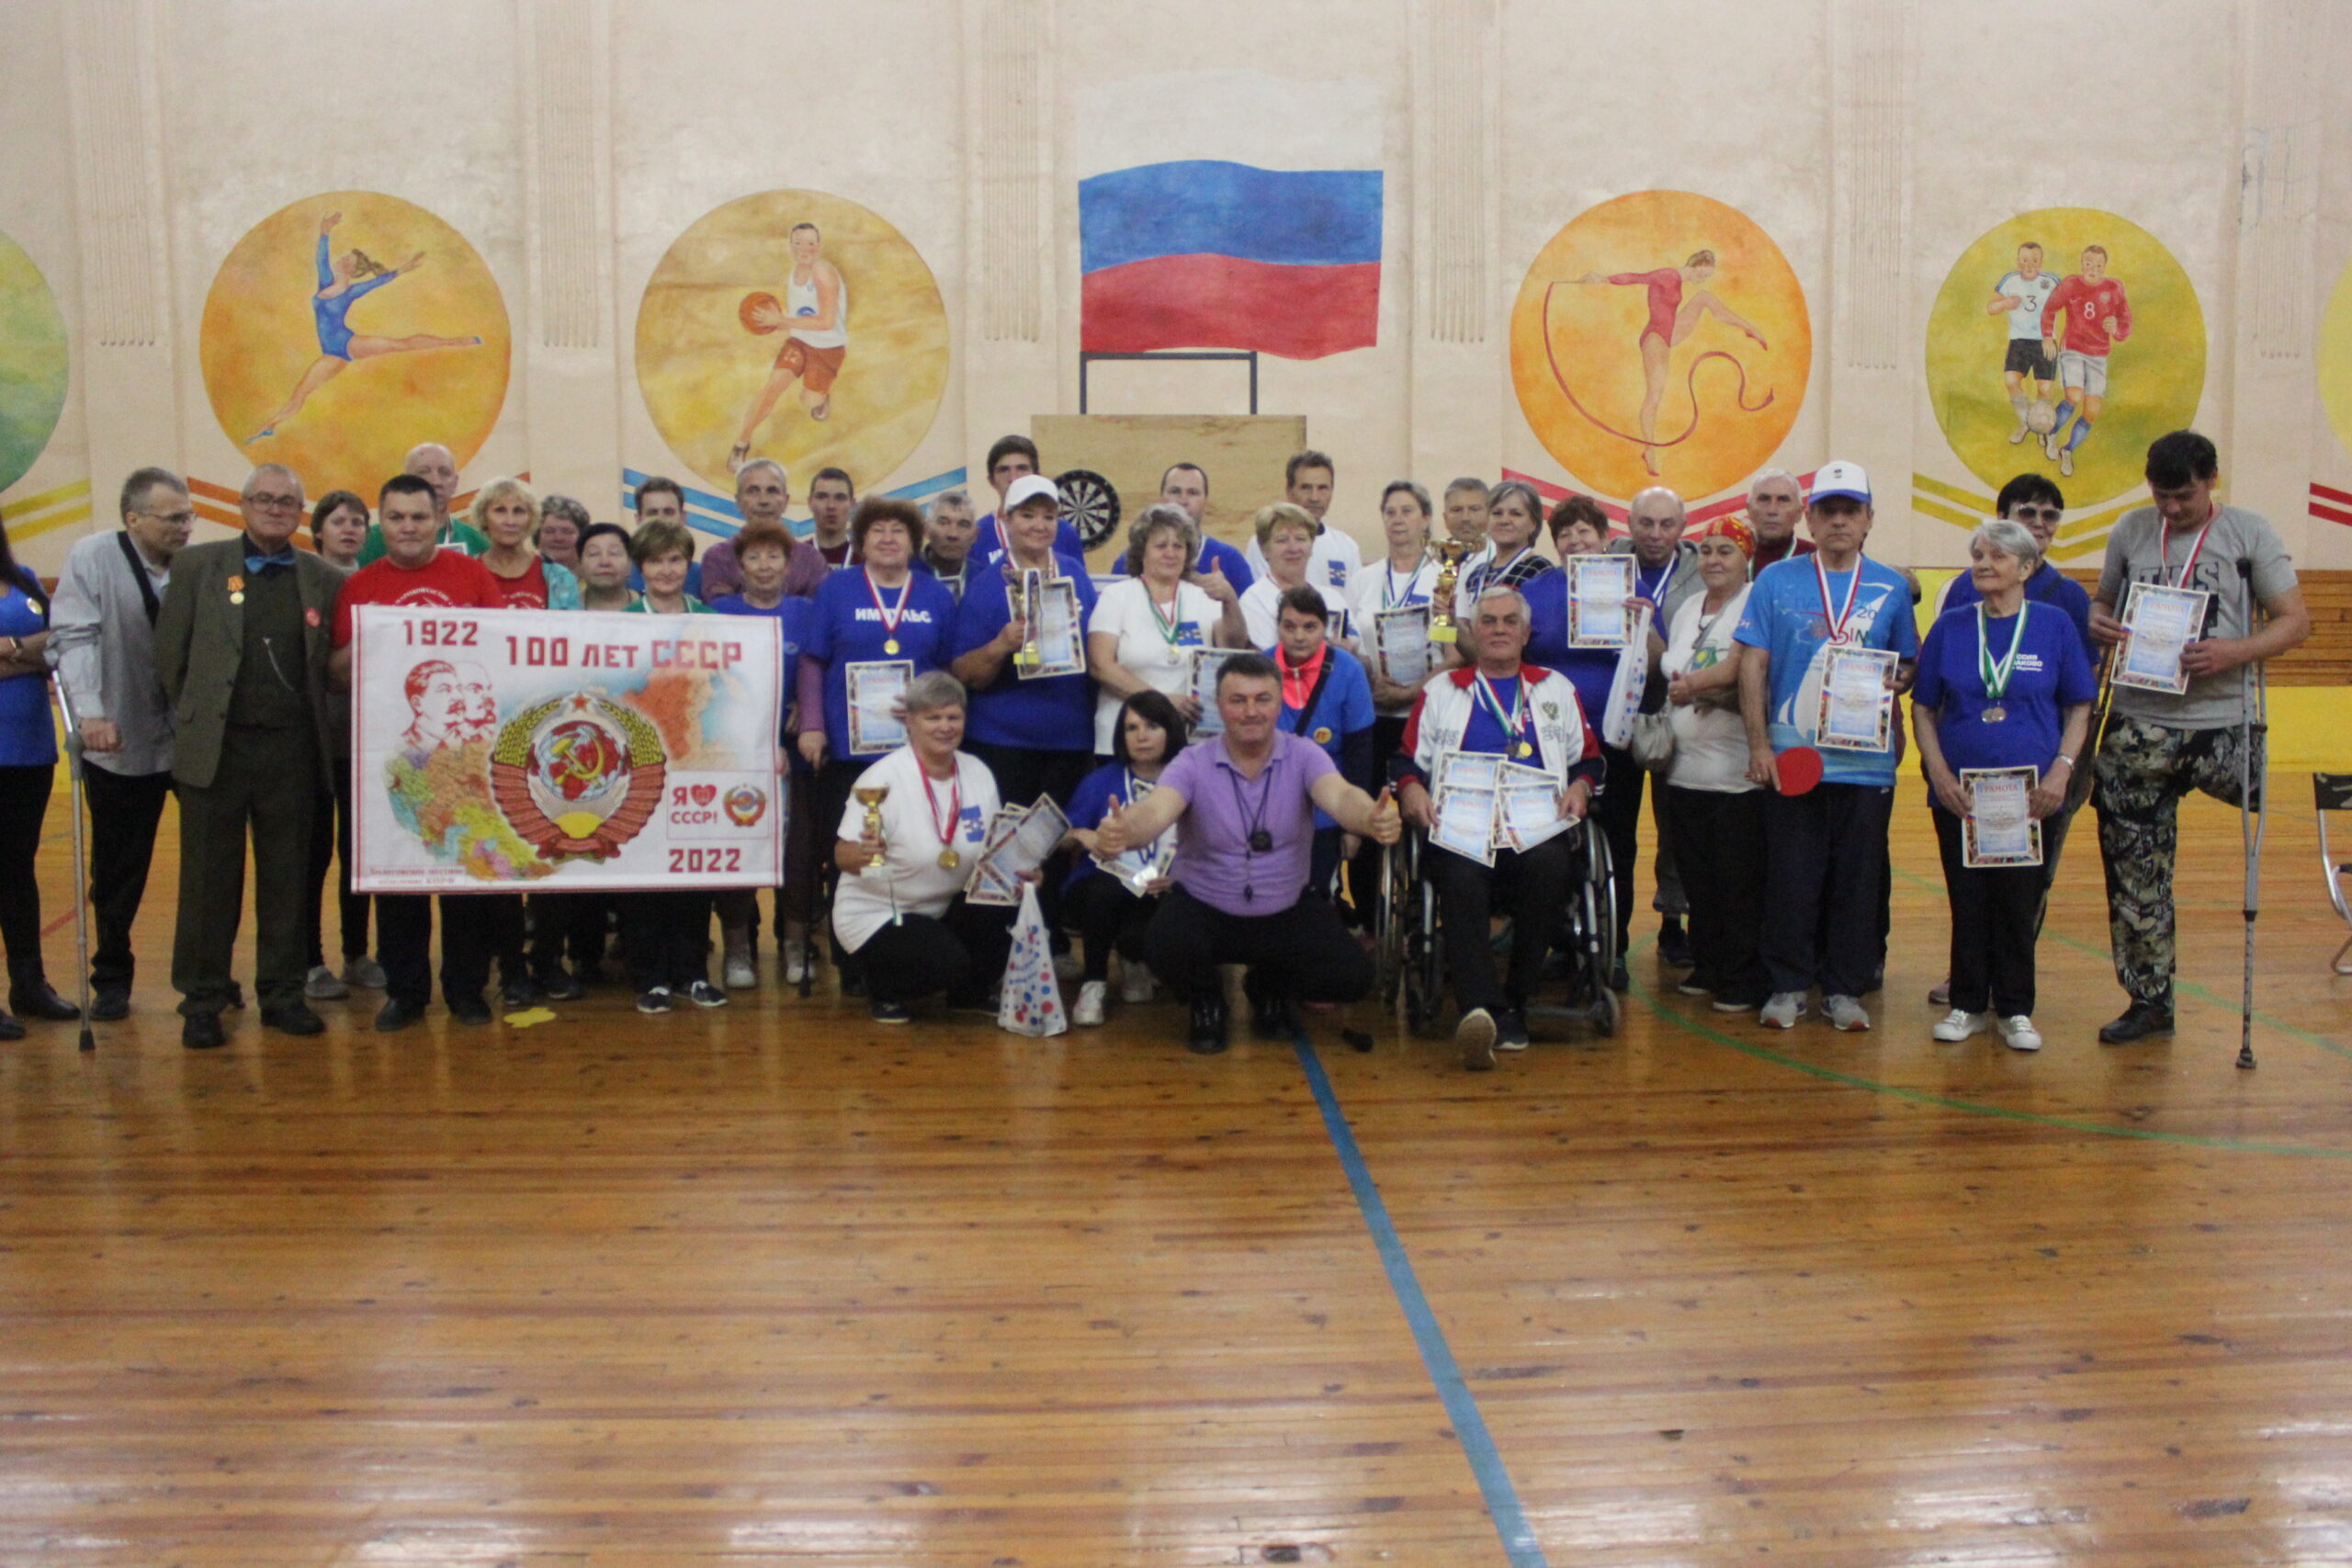 В Бологовском районе при поддержке КПРФ прошёл спортивный праздник в честь 100-летия образования СССР